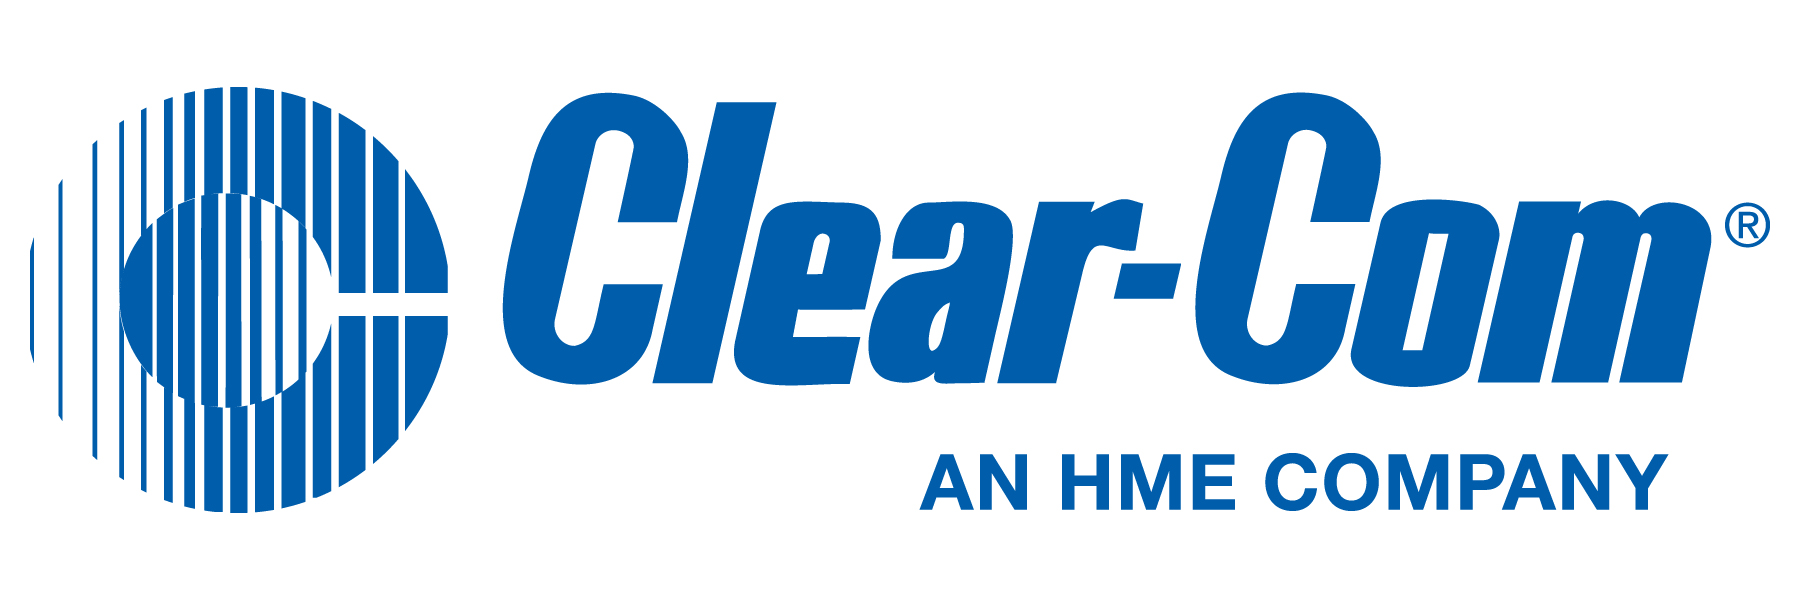 Clearcom